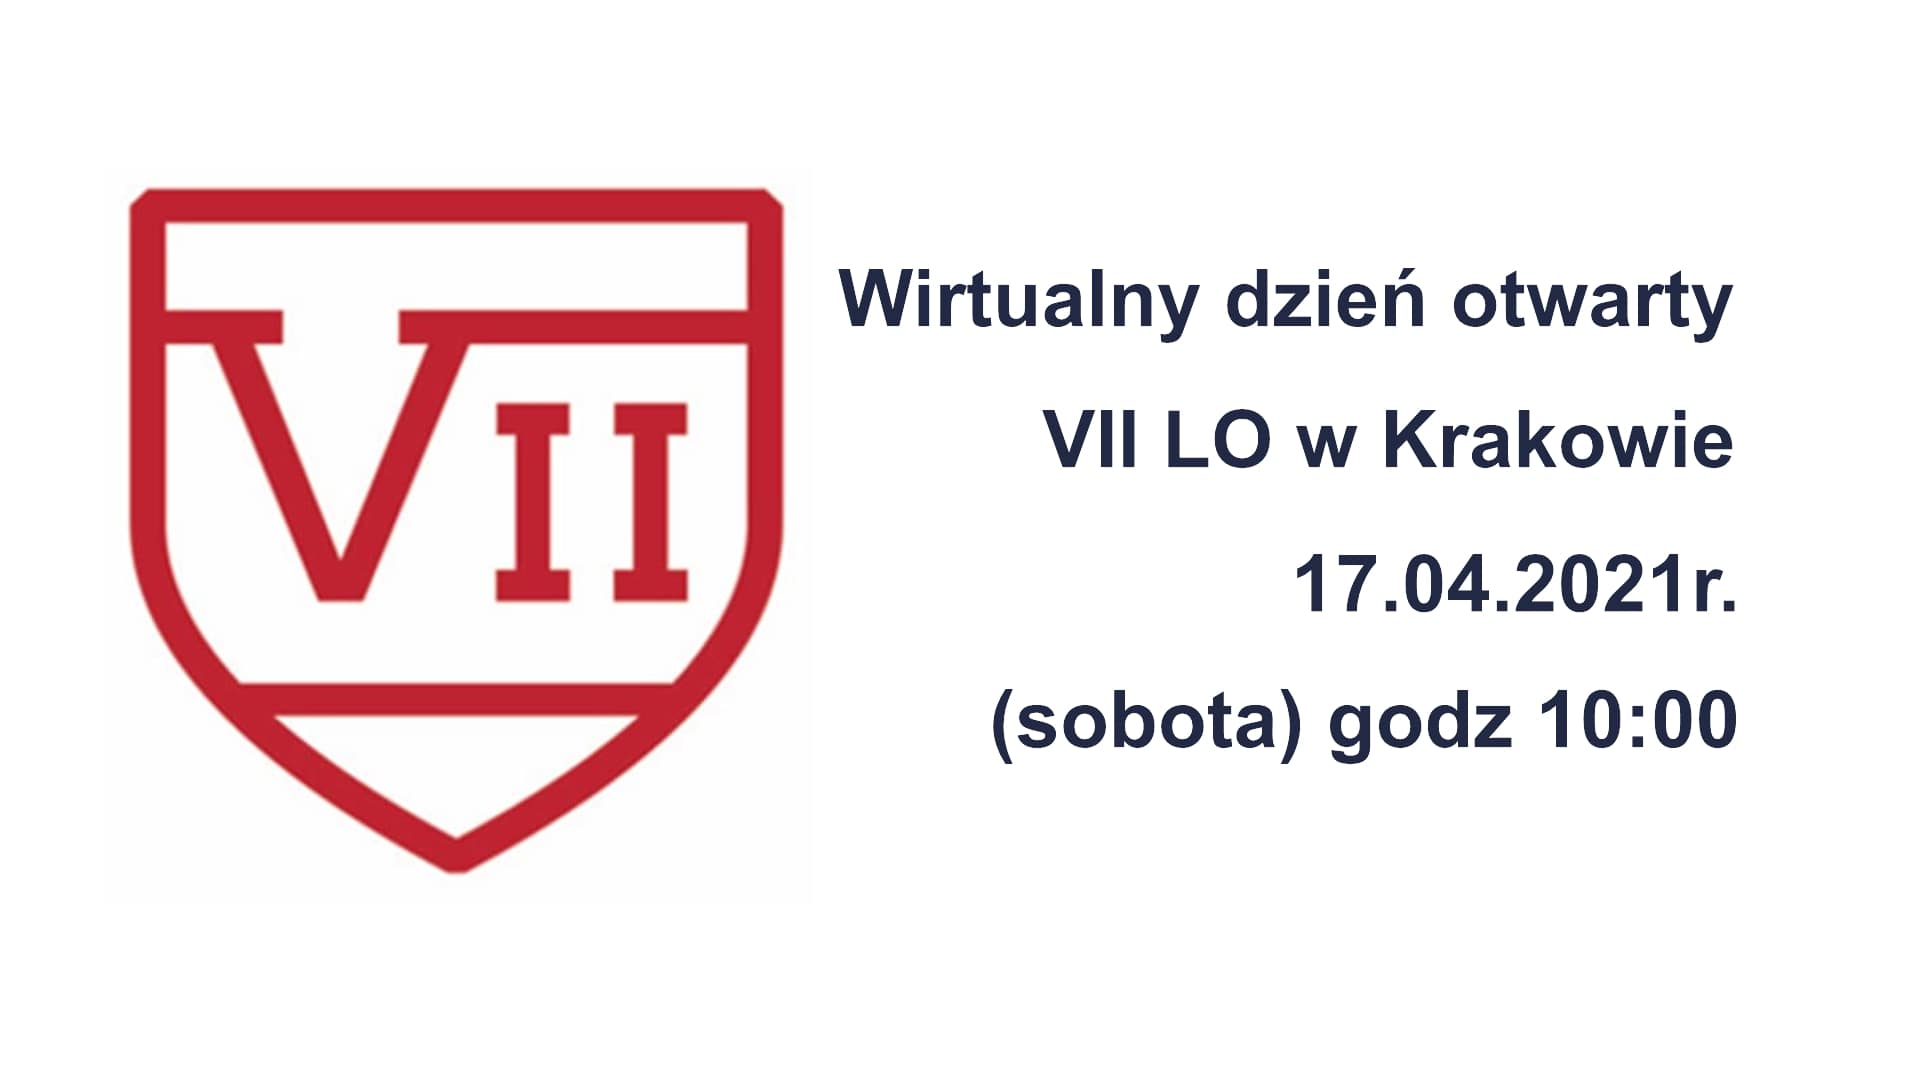 Wirtualny dzień otwarty VII LO Kraków